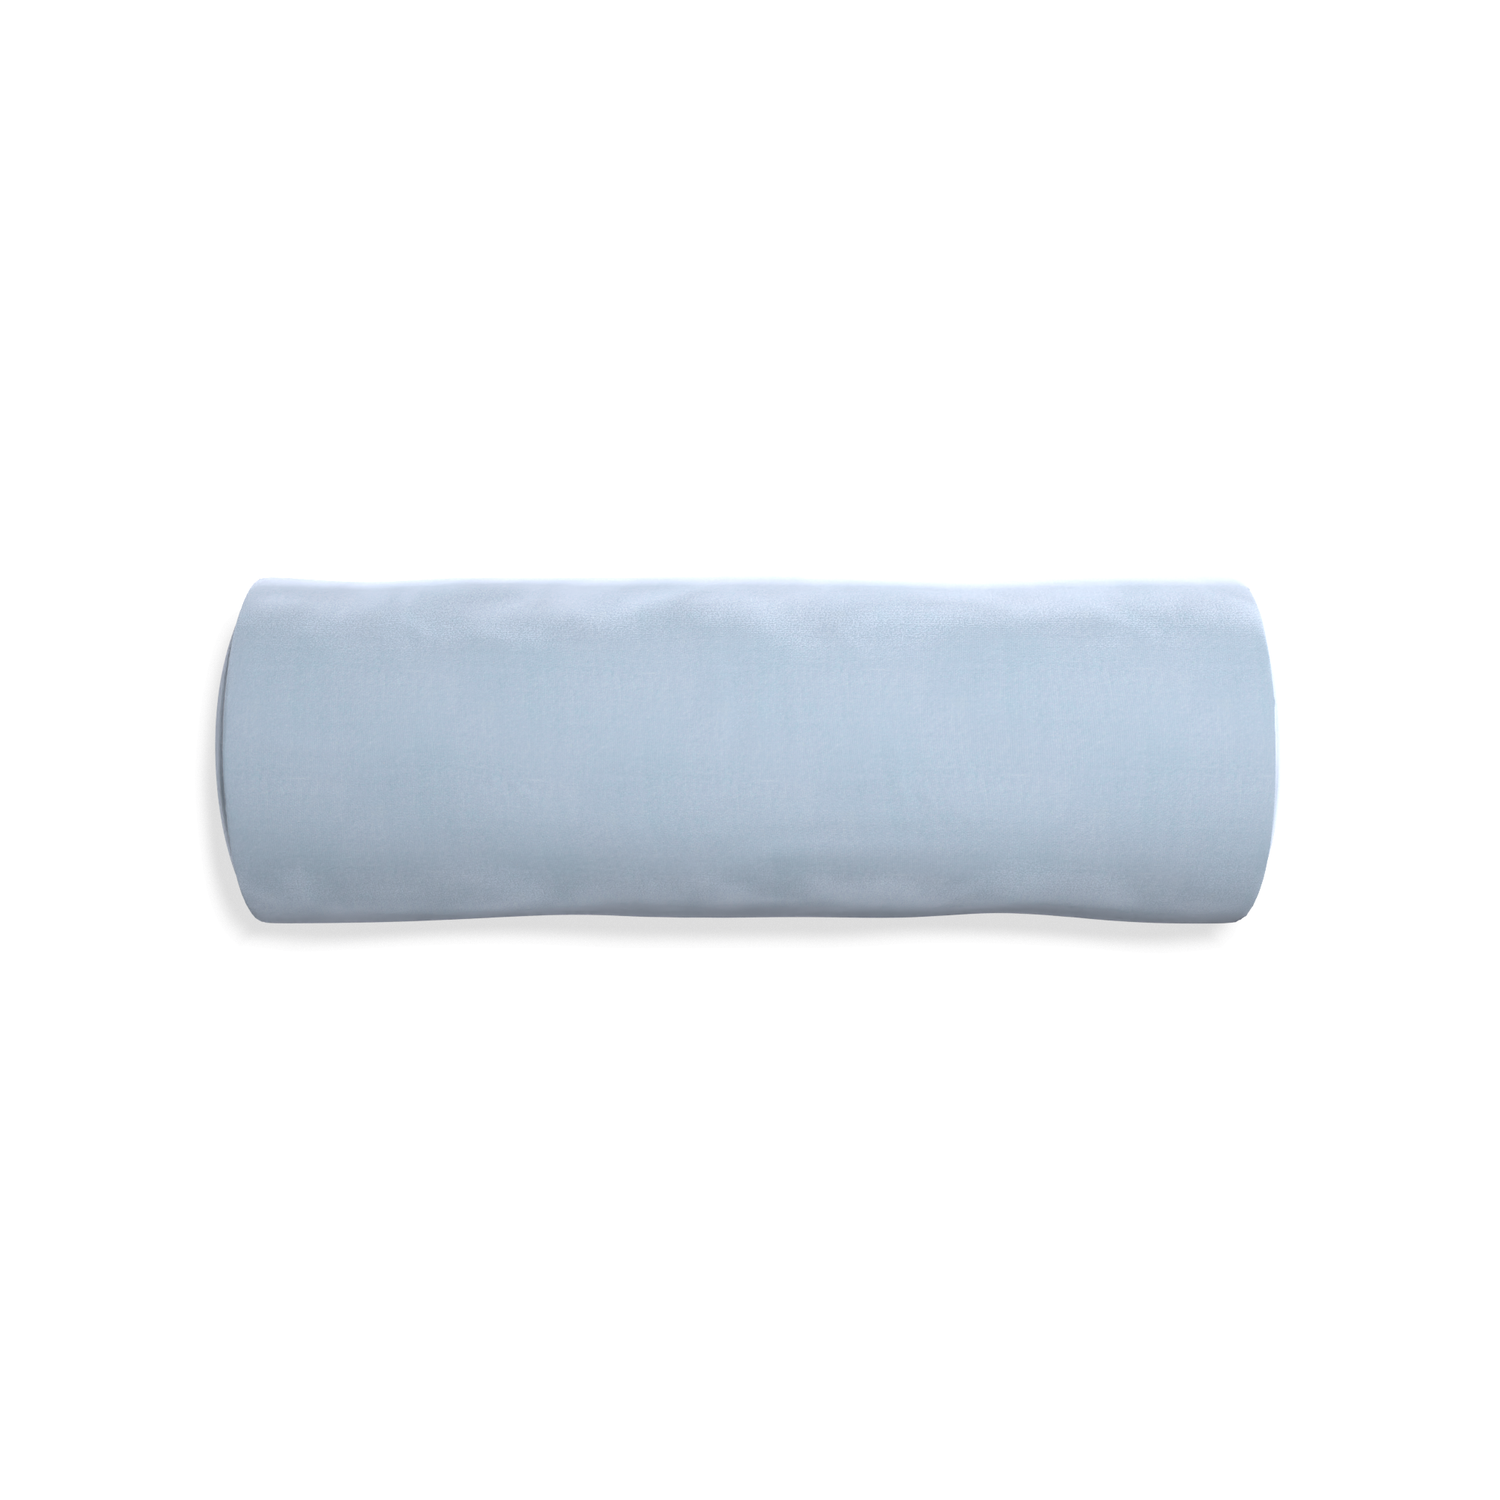 Bolster sky velvet custom pillow with none on white background